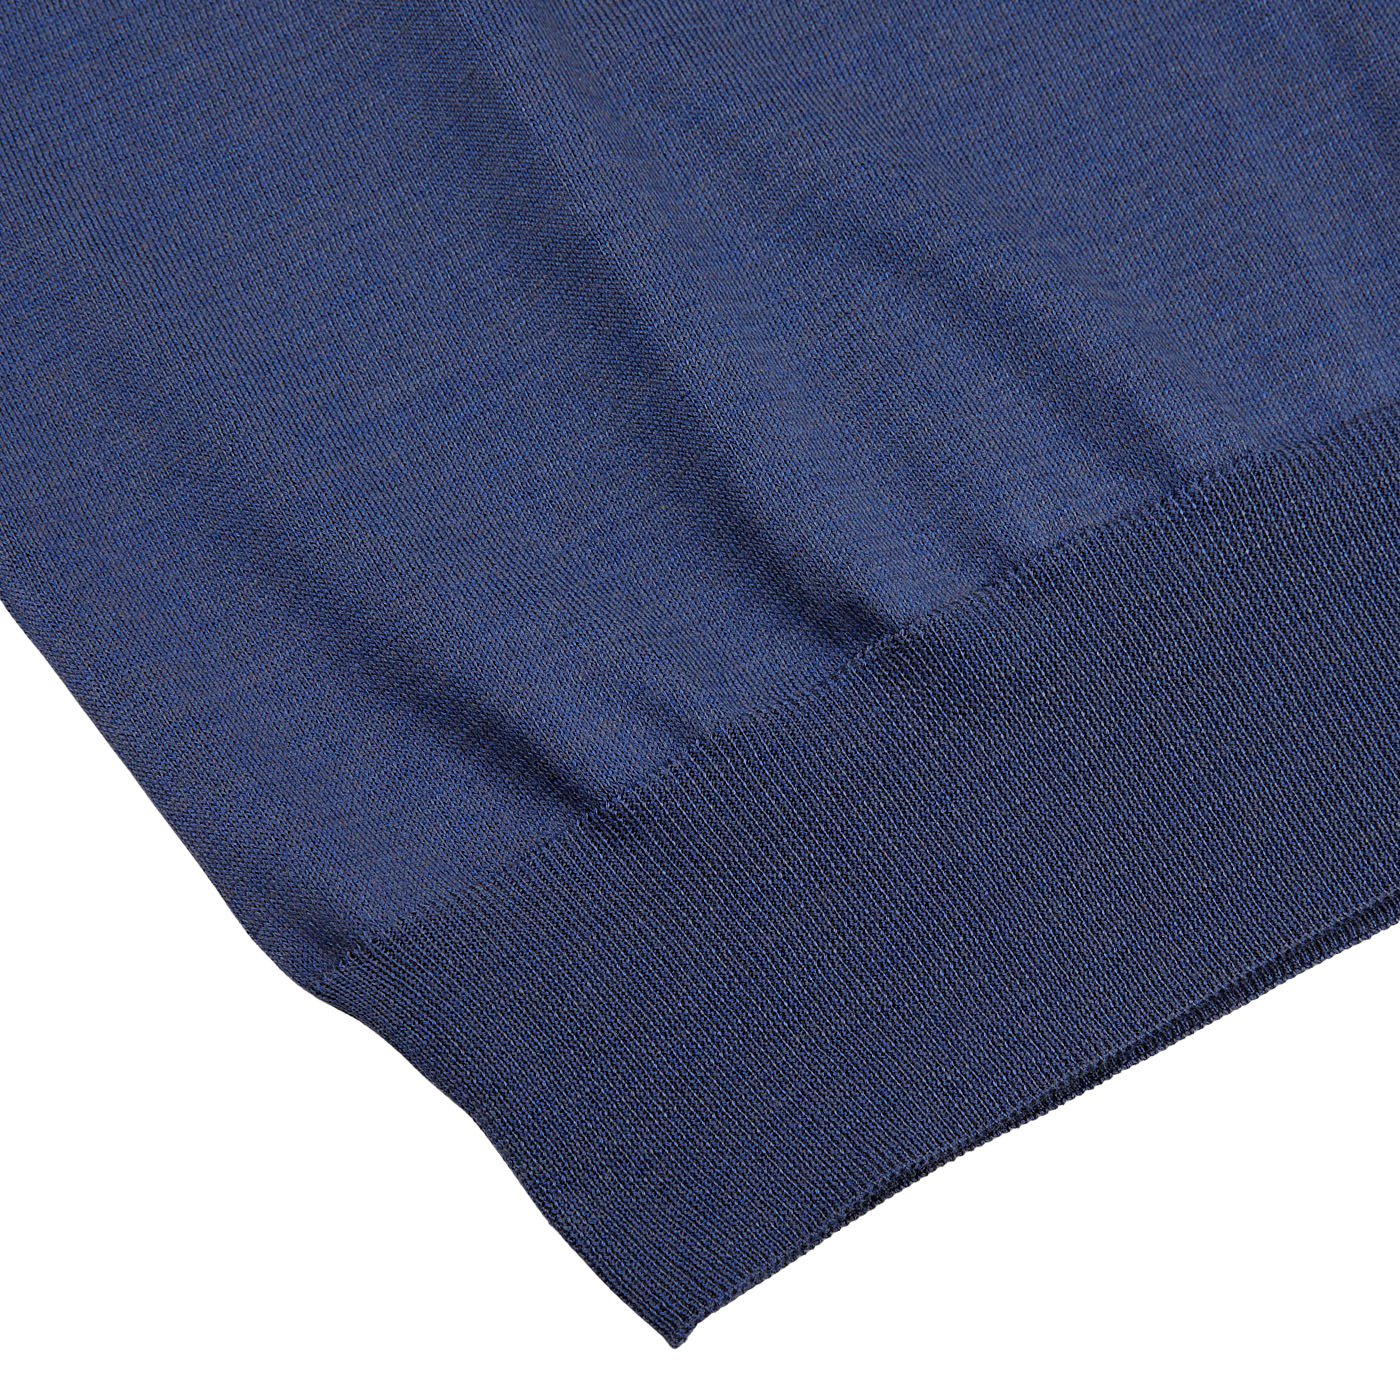 A Gran Sasso Dark Blue Silk Cotton Crewneck Sweater in a dark blue summer version.